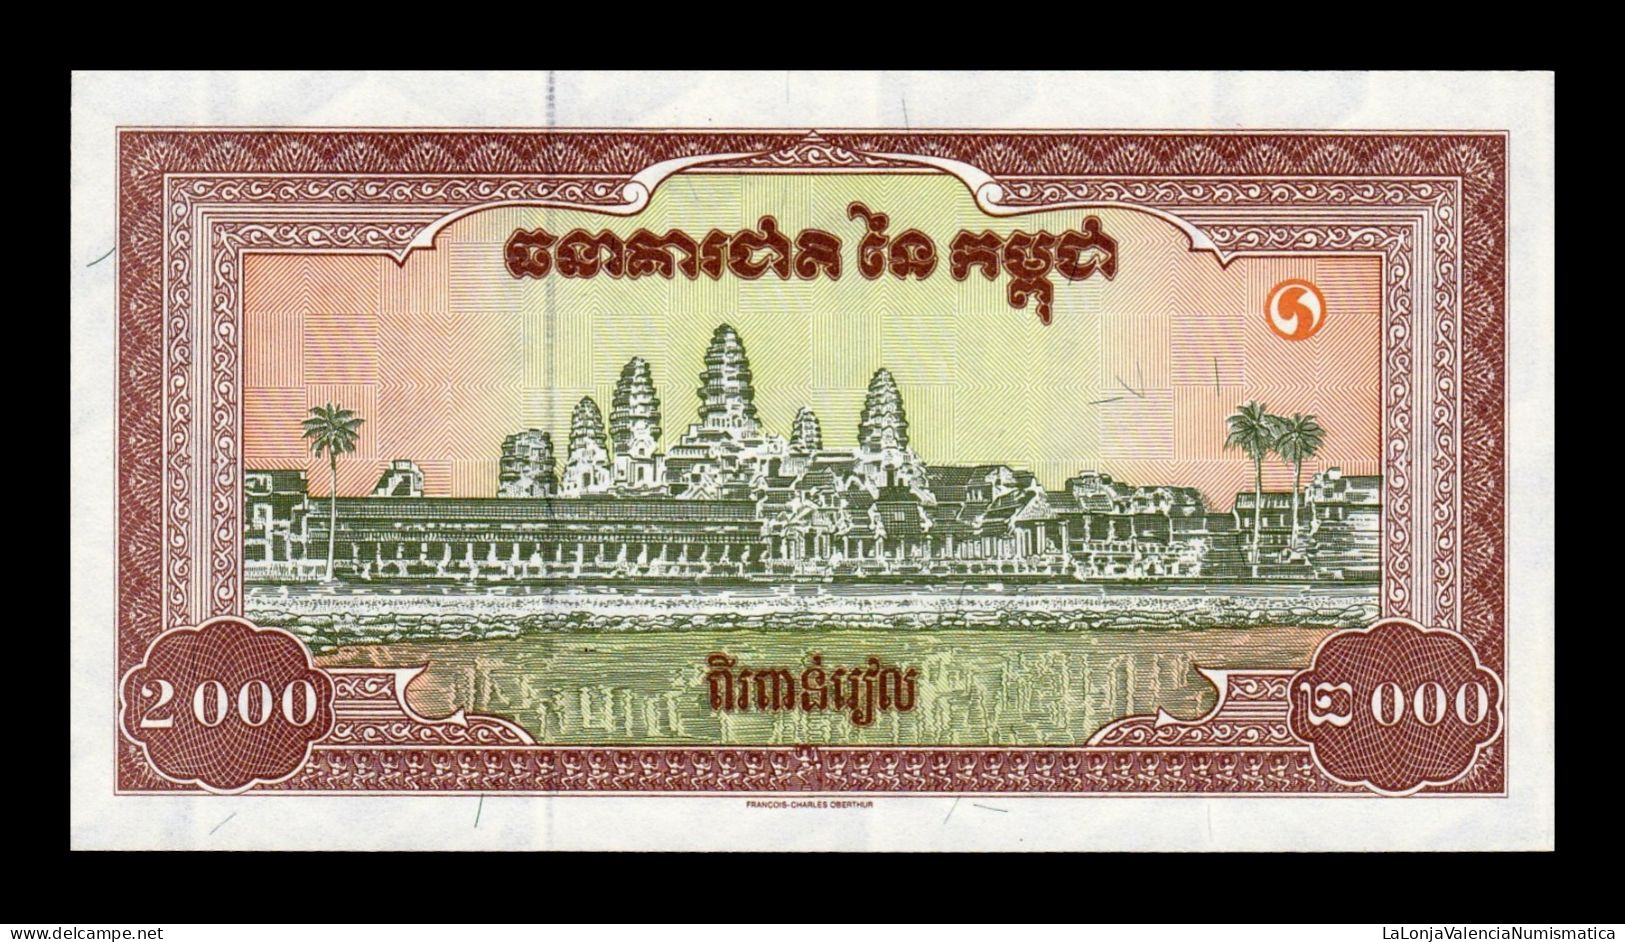 Camboya Cambodia 2000 Riels 1995 Pick 45 Sc Unc - Cambodge